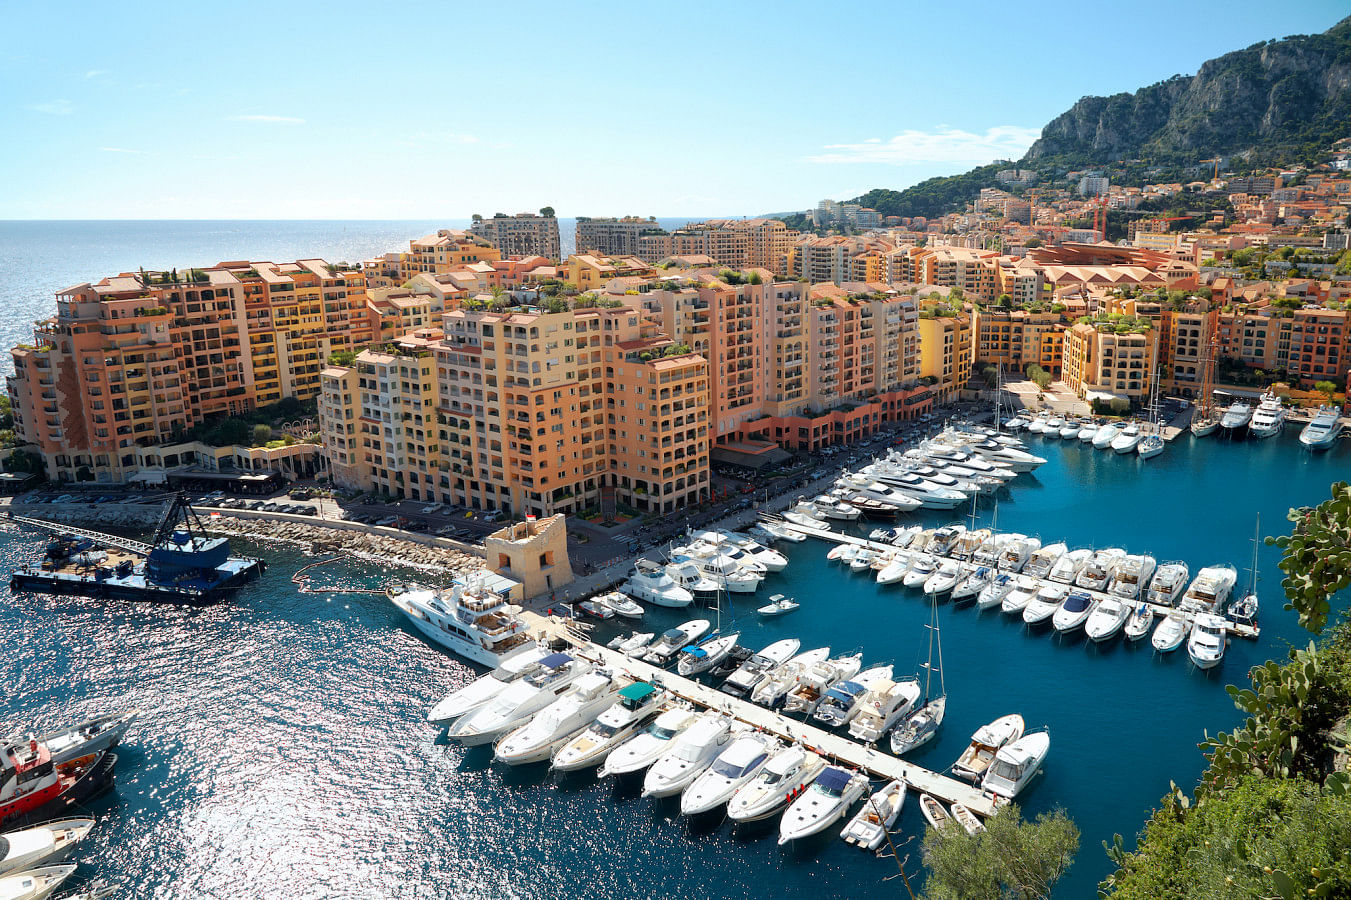 Alquilar un barco en Monaco